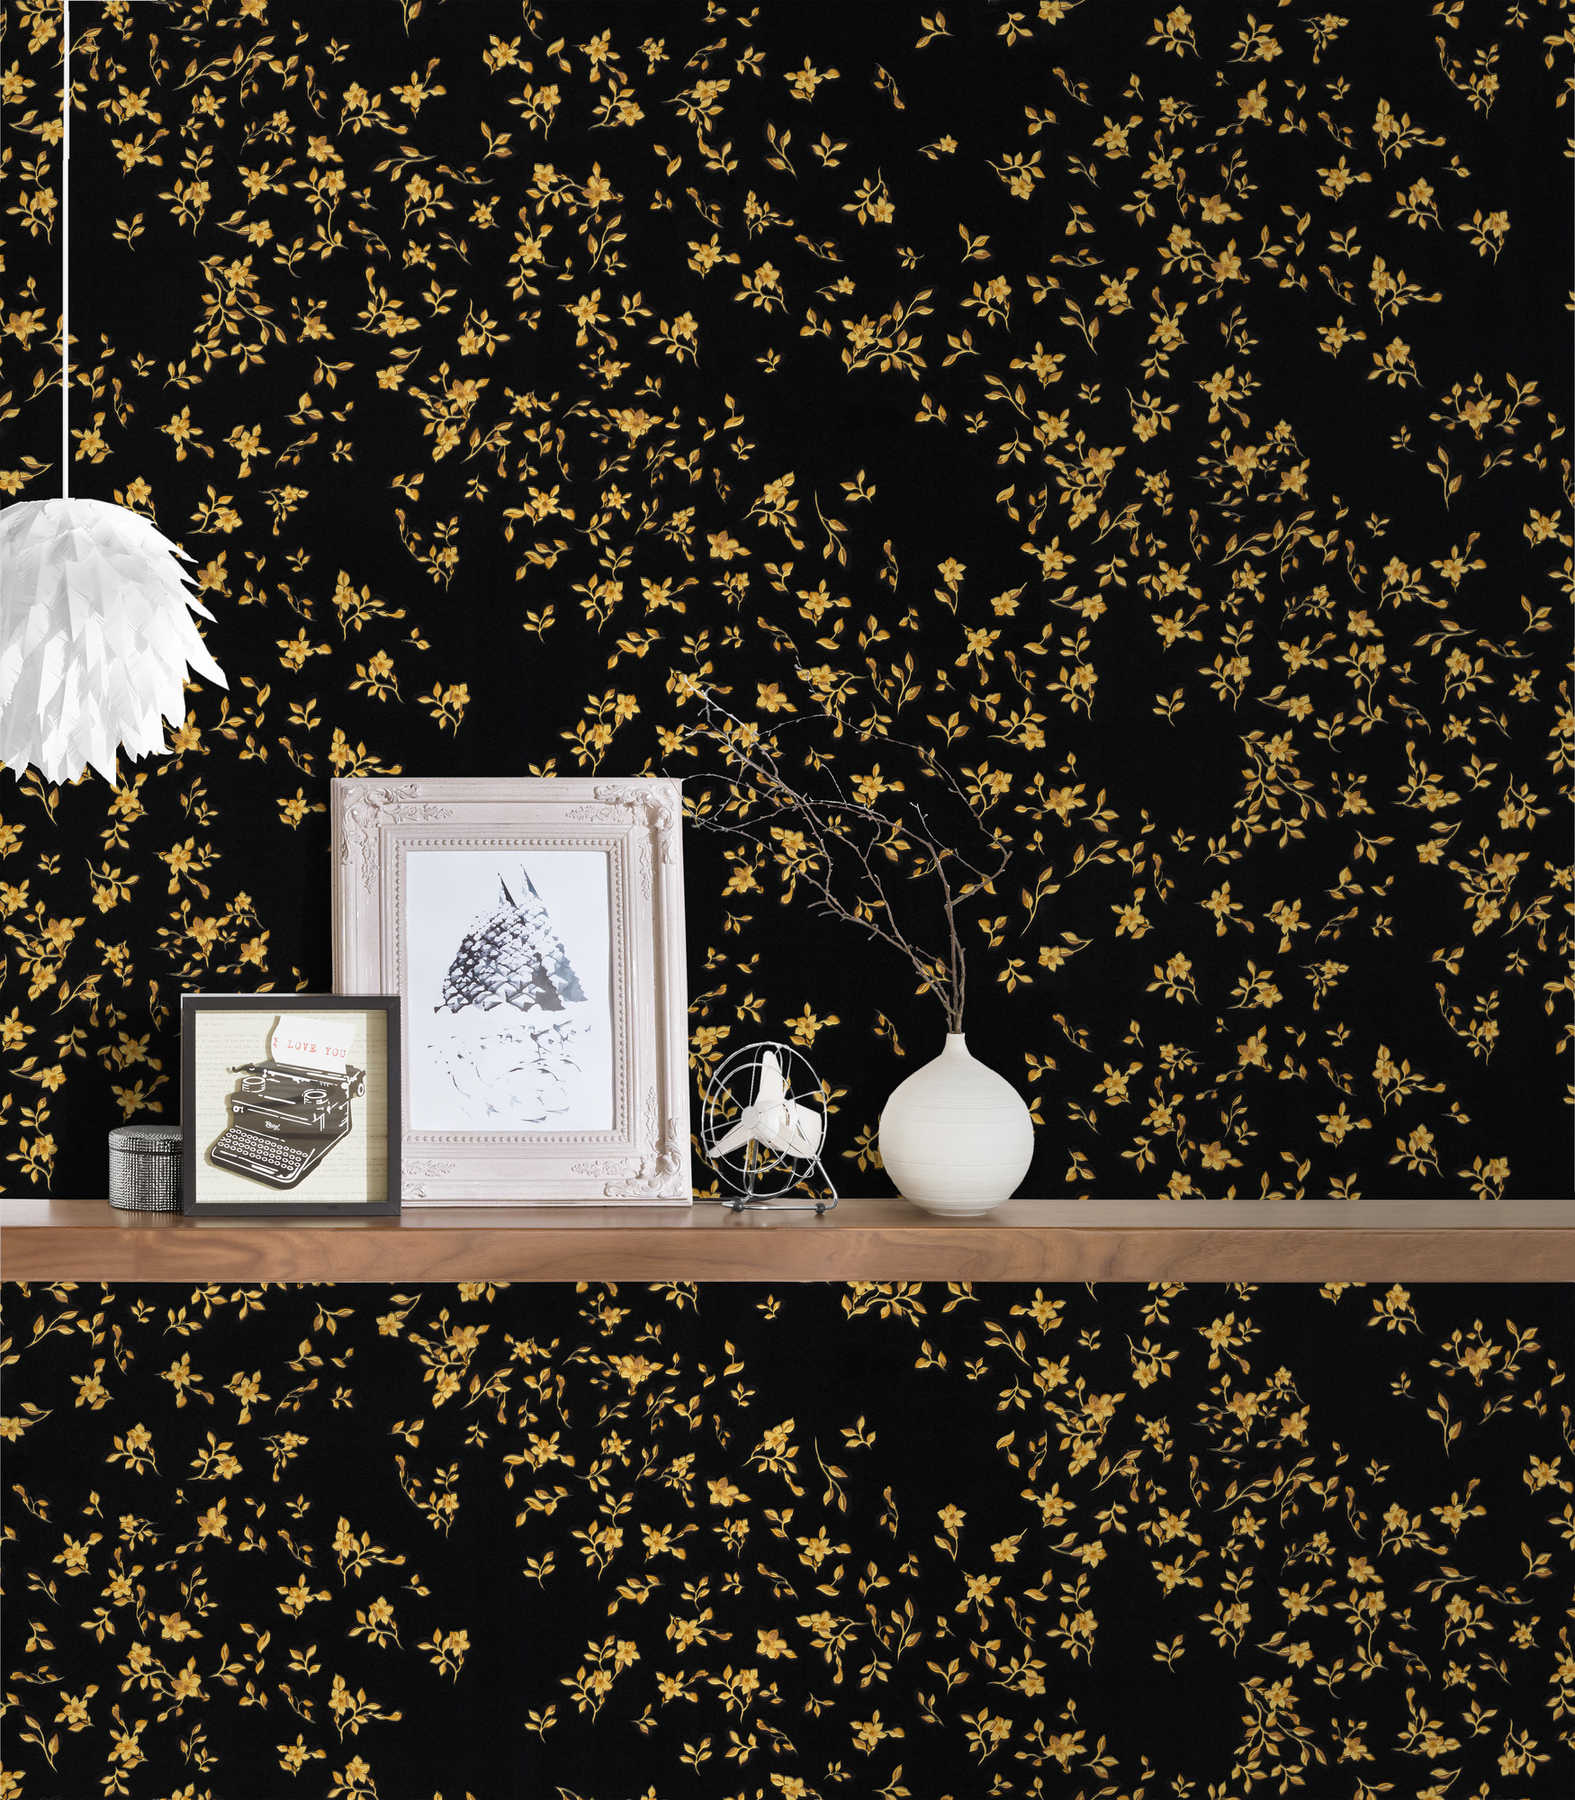             Zwart VERSACE-behang met bloemmotief - zwart, goud
        